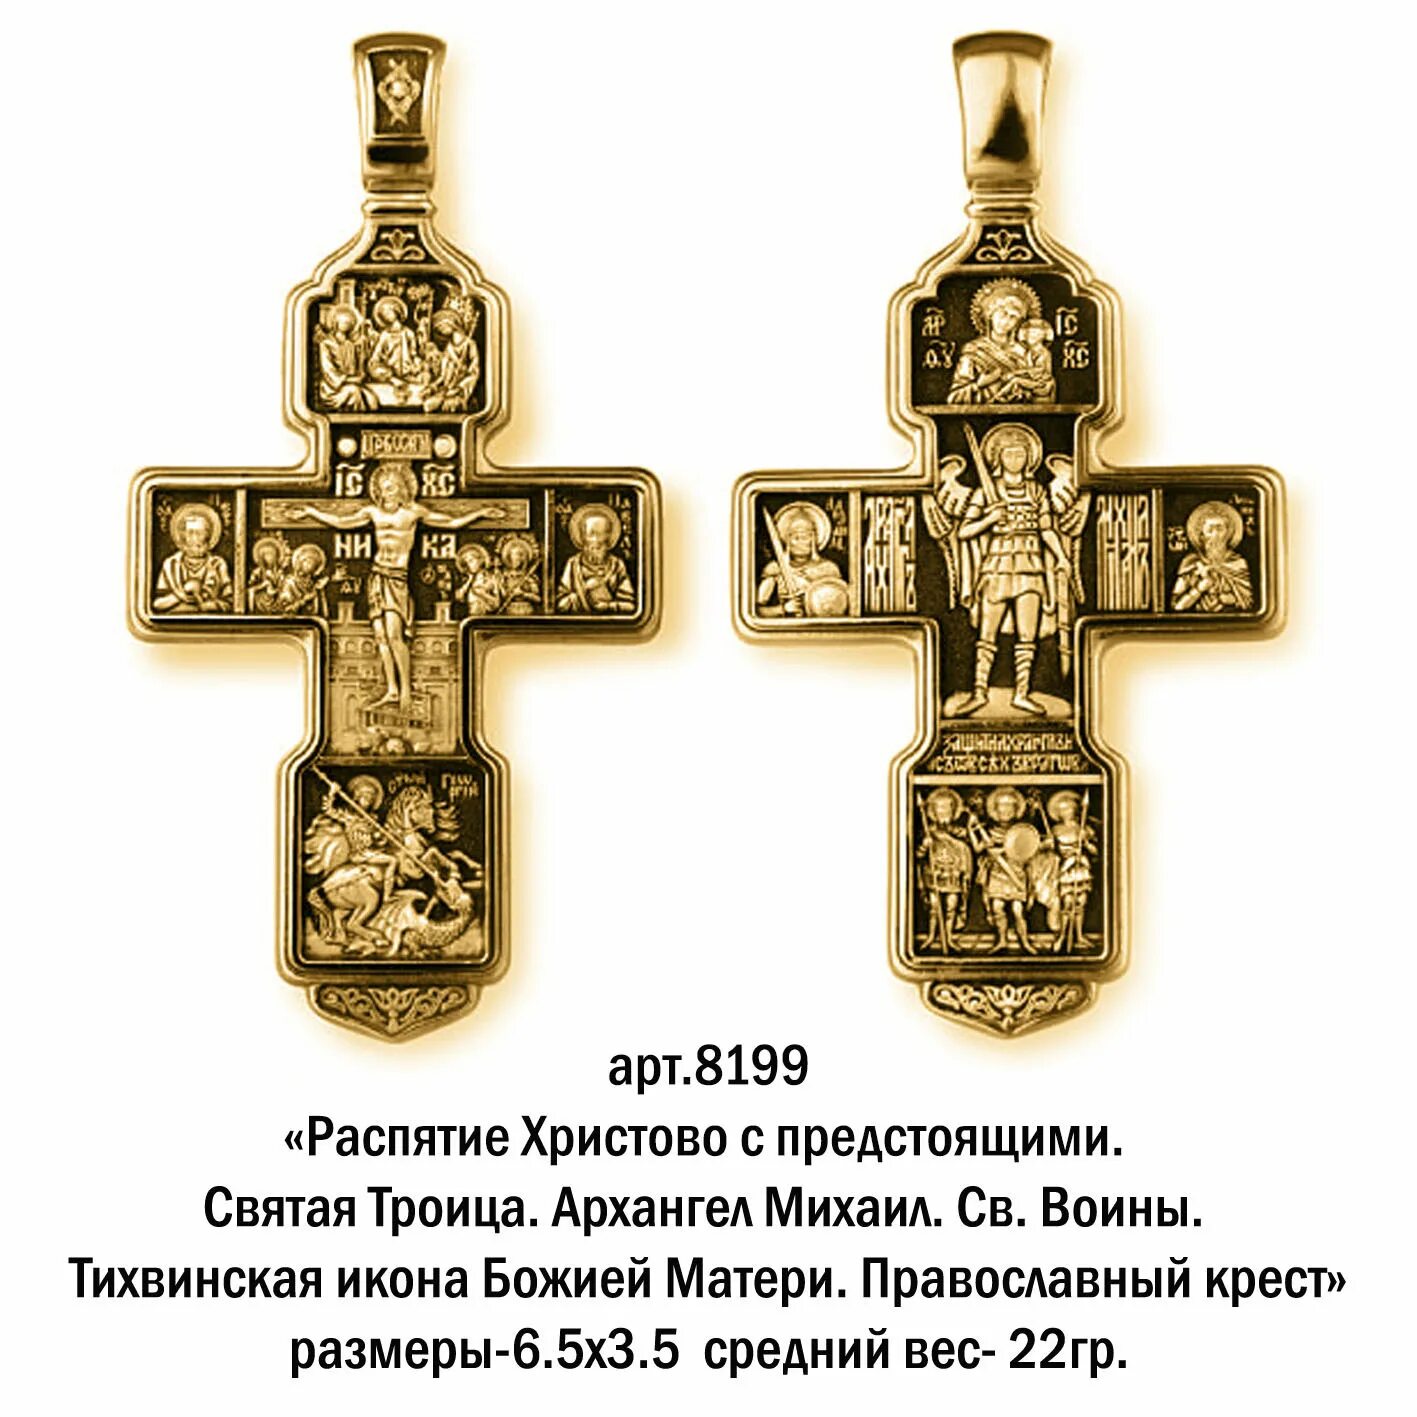 Православный крест (крест Святого Лазаря). Изображения на нательном крестике. Какие есть православные кресты